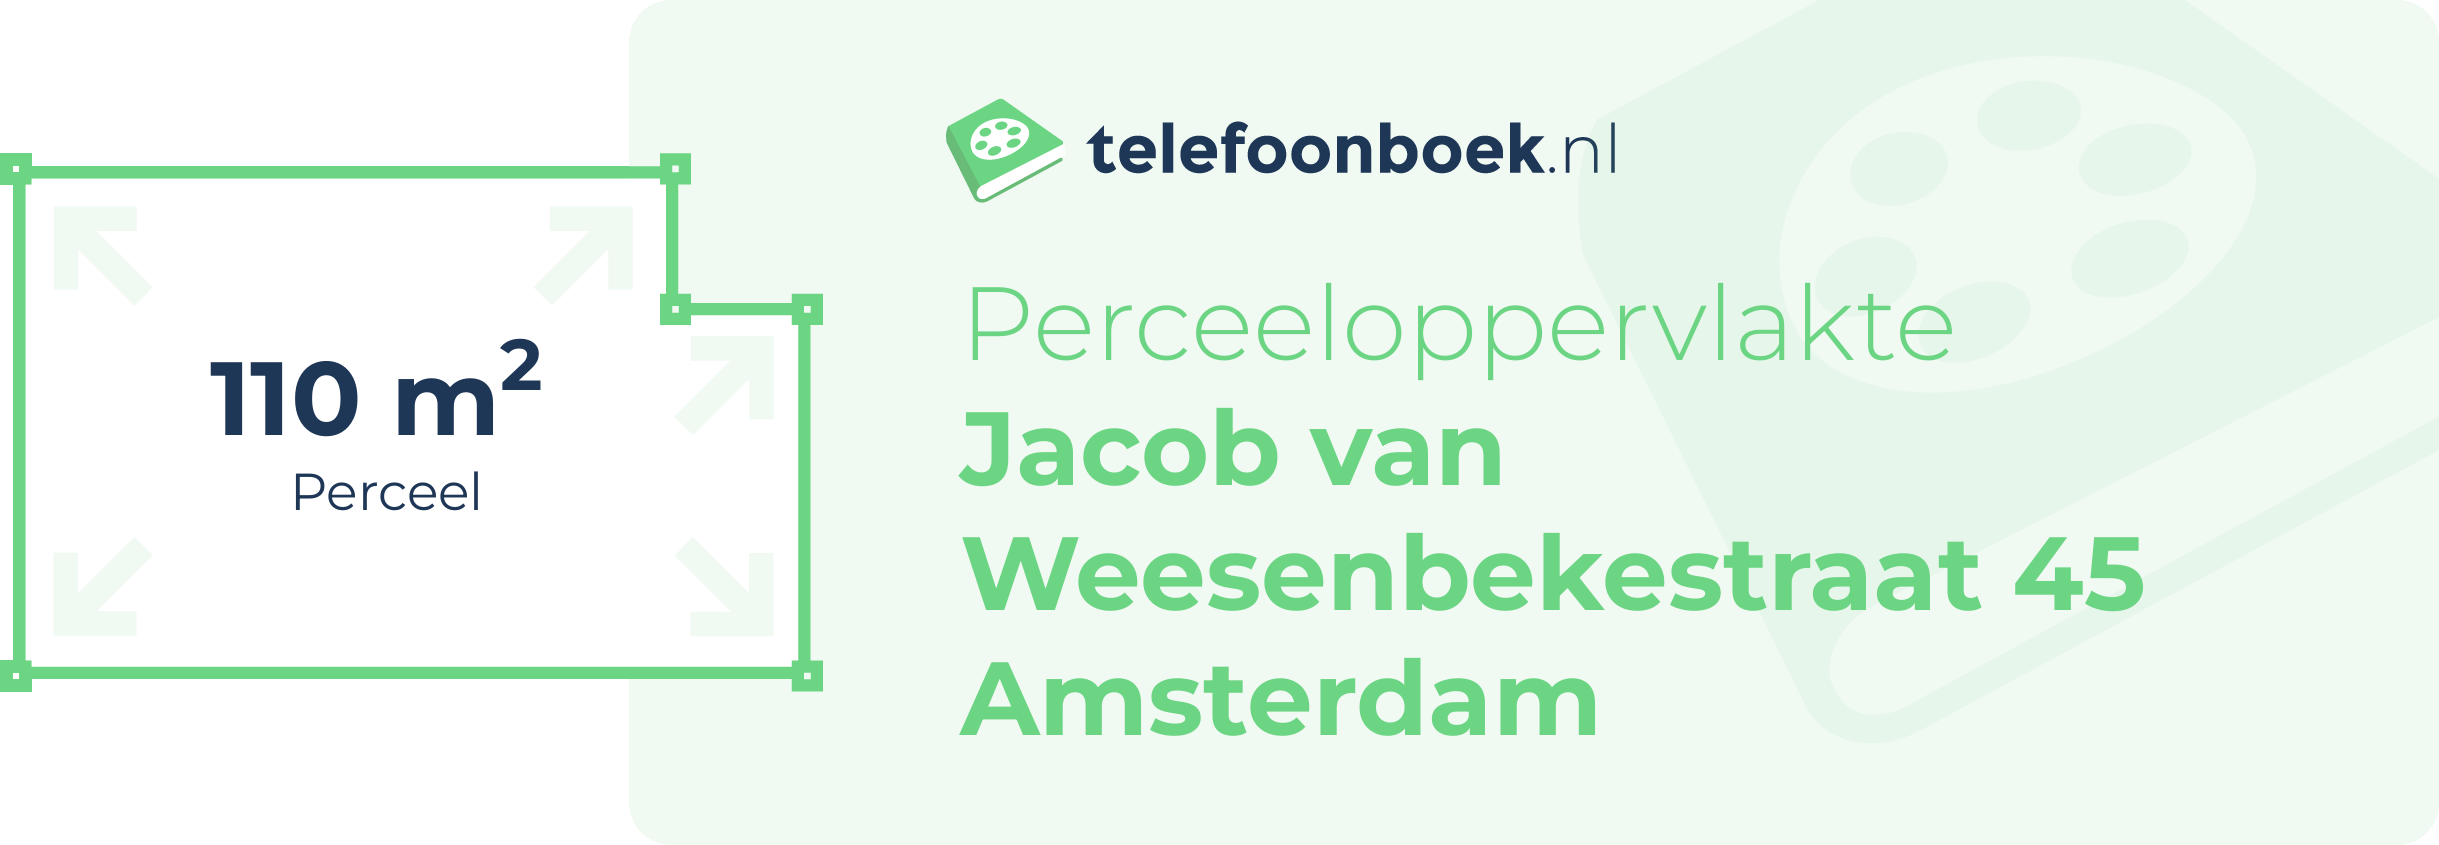 Perceeloppervlakte Jacob Van Weesenbekestraat 45 Amsterdam